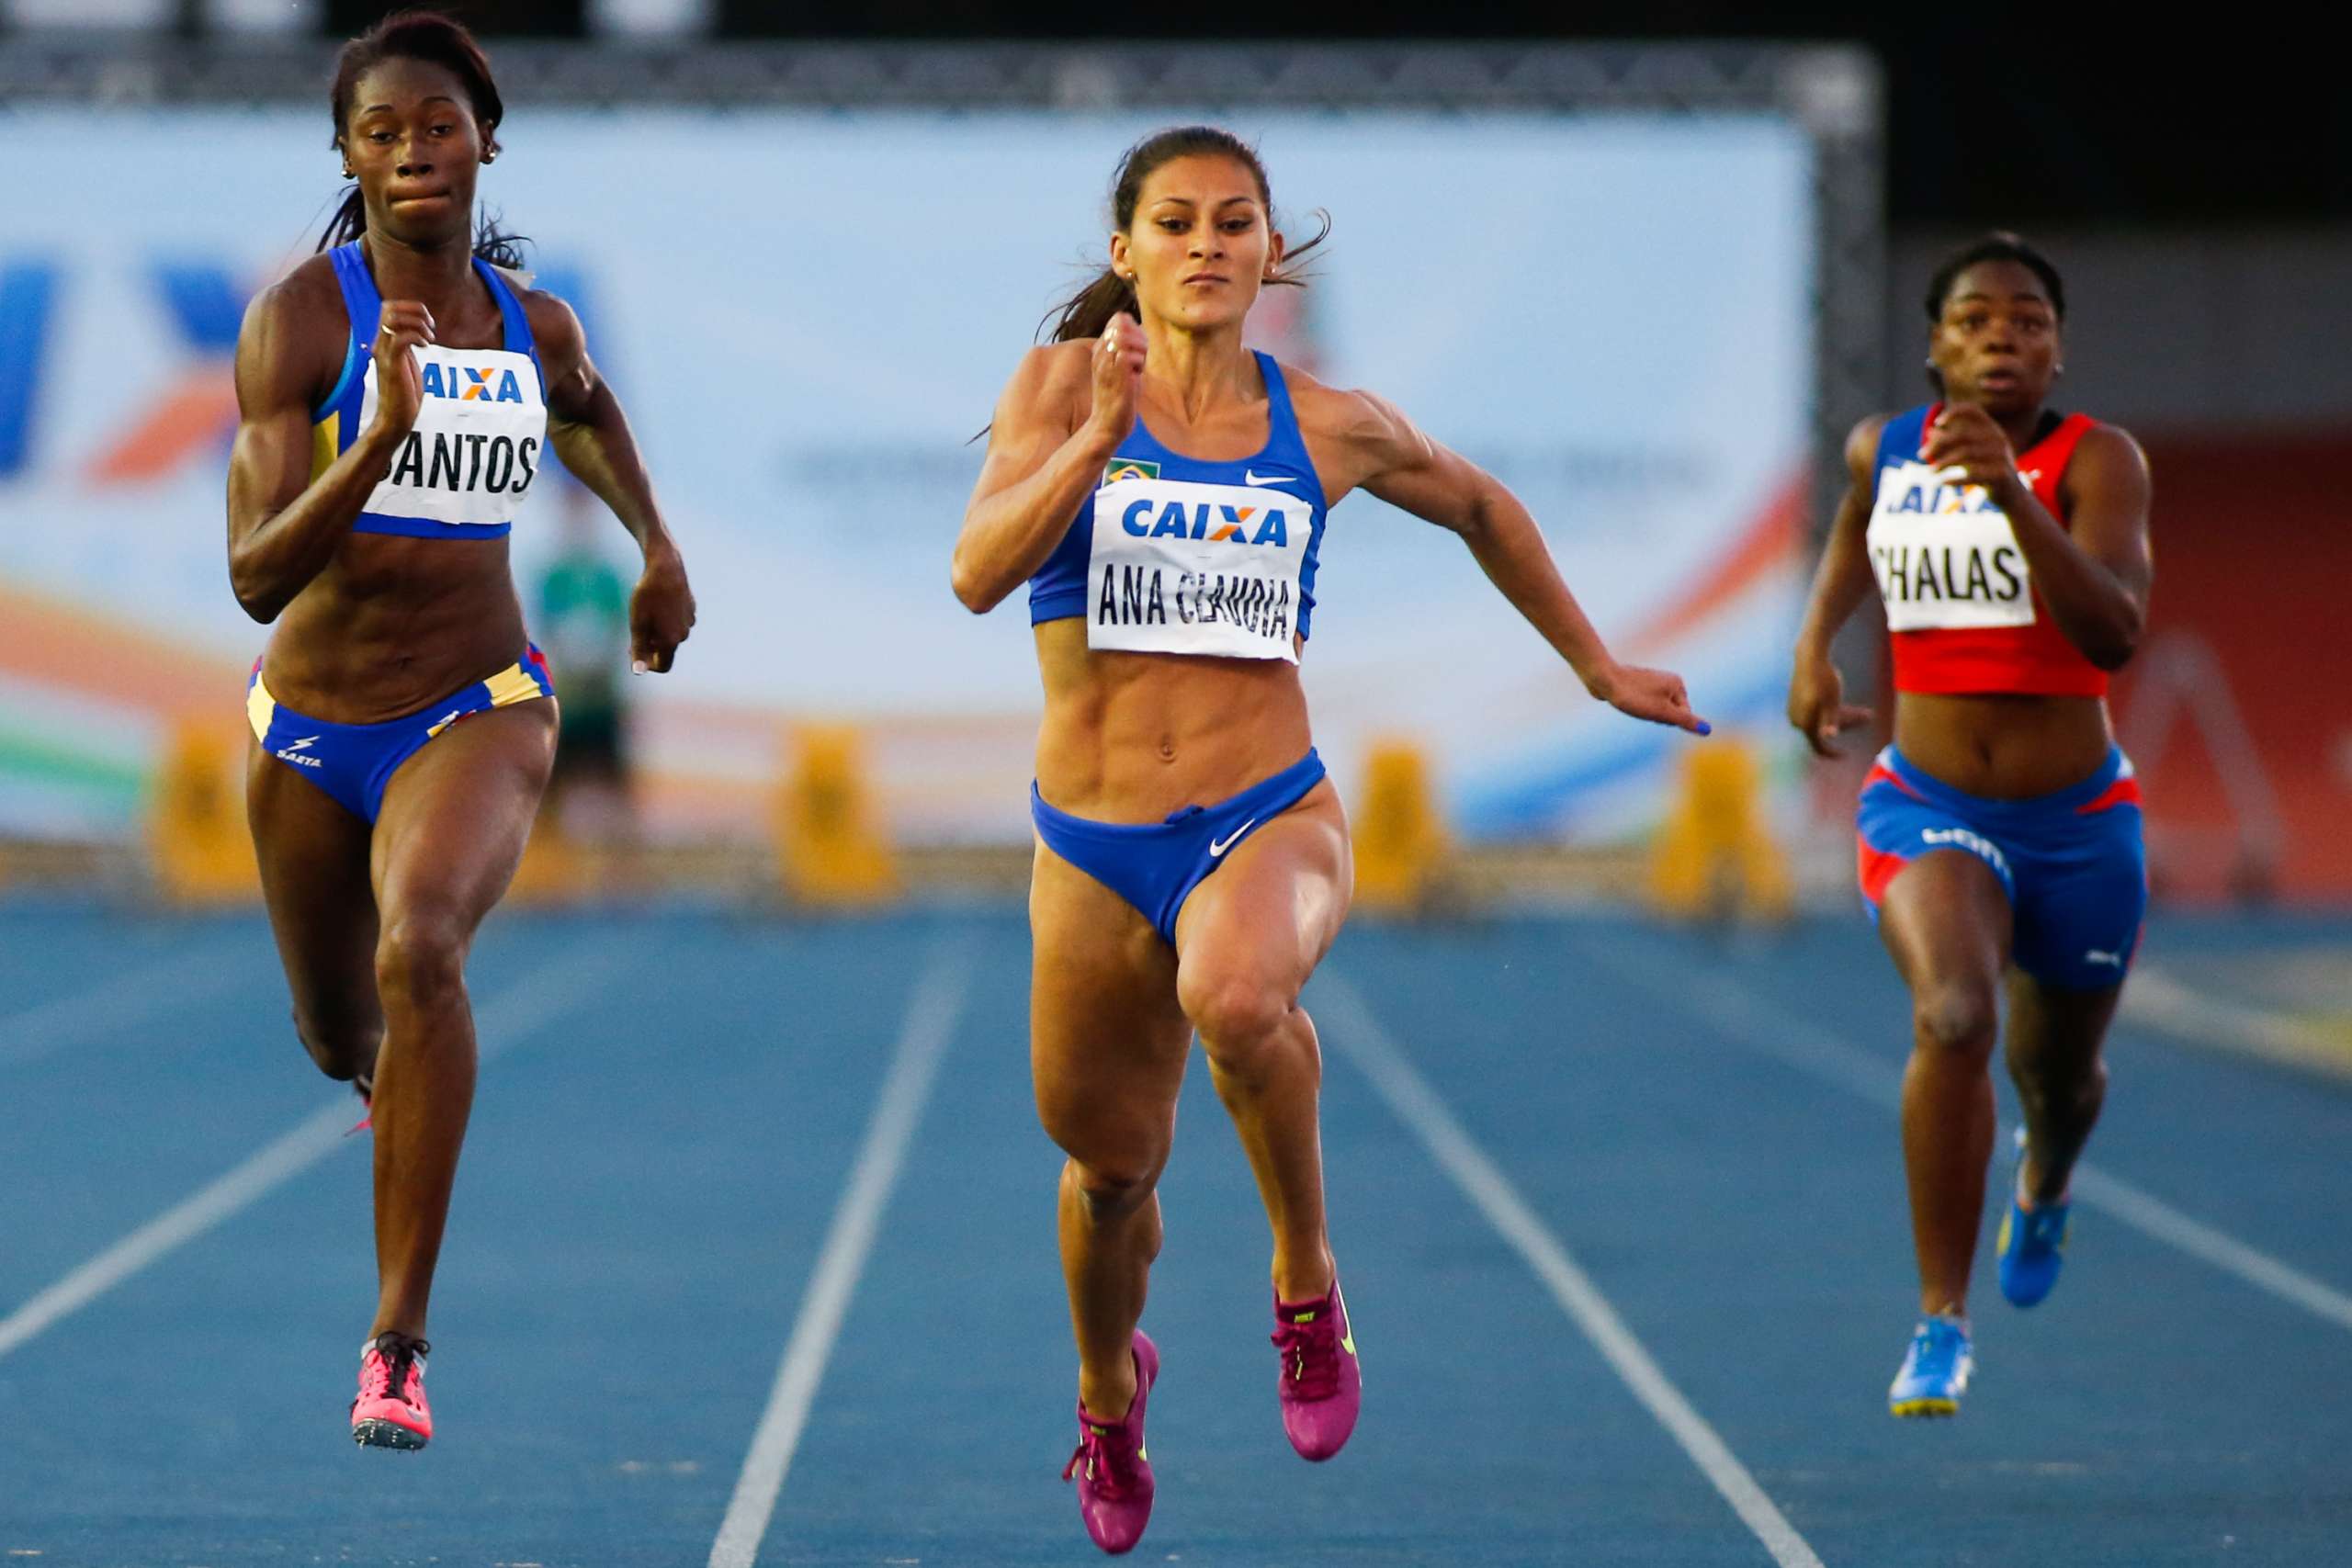 Atletismo: Evento-teste chega ao fim com mais dois índices olímpicos